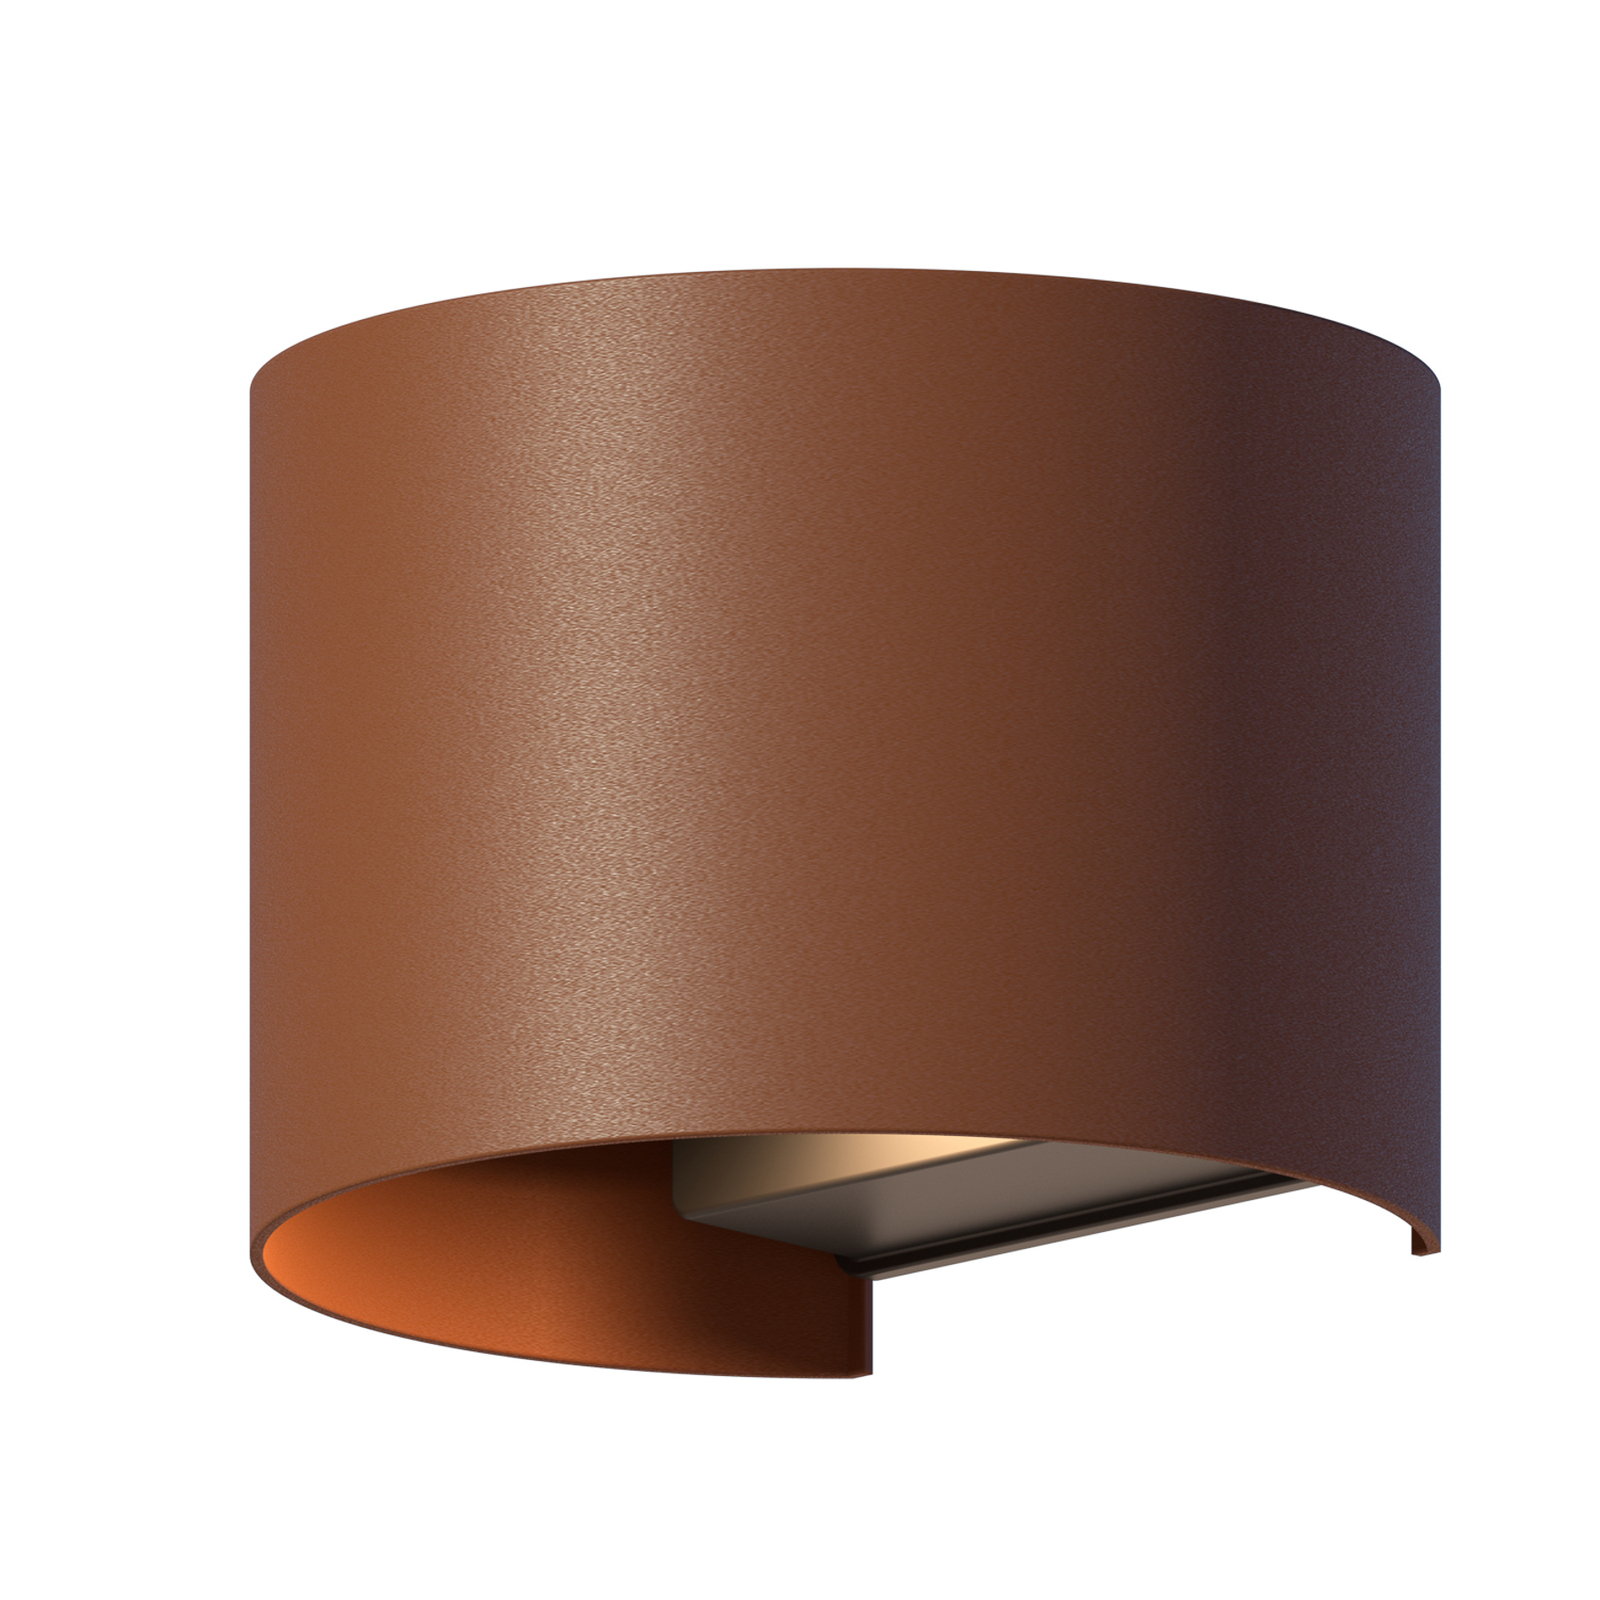 Calex LED utendørs vegglampe oval, opp/ned, høyde 10 cm, rustbrun